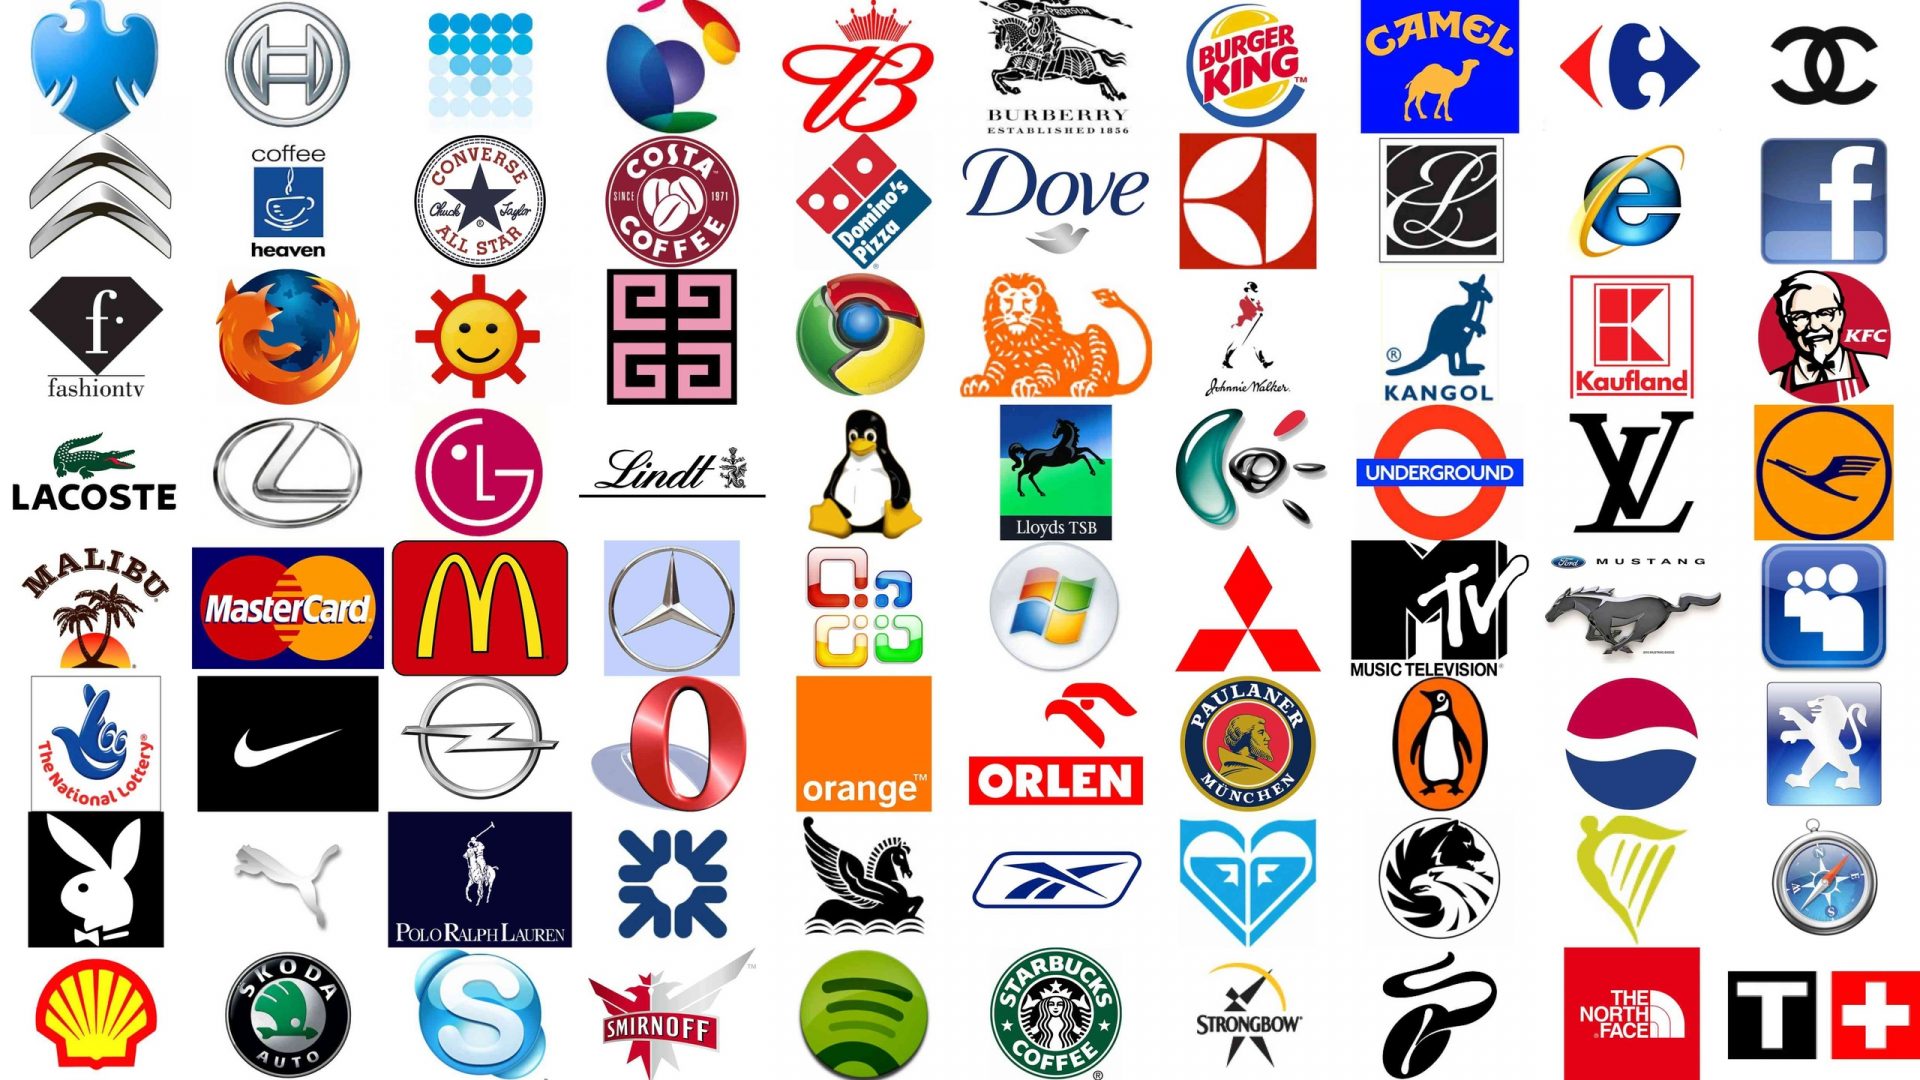 Hasil gambar untuk logo perusahaan terkenal